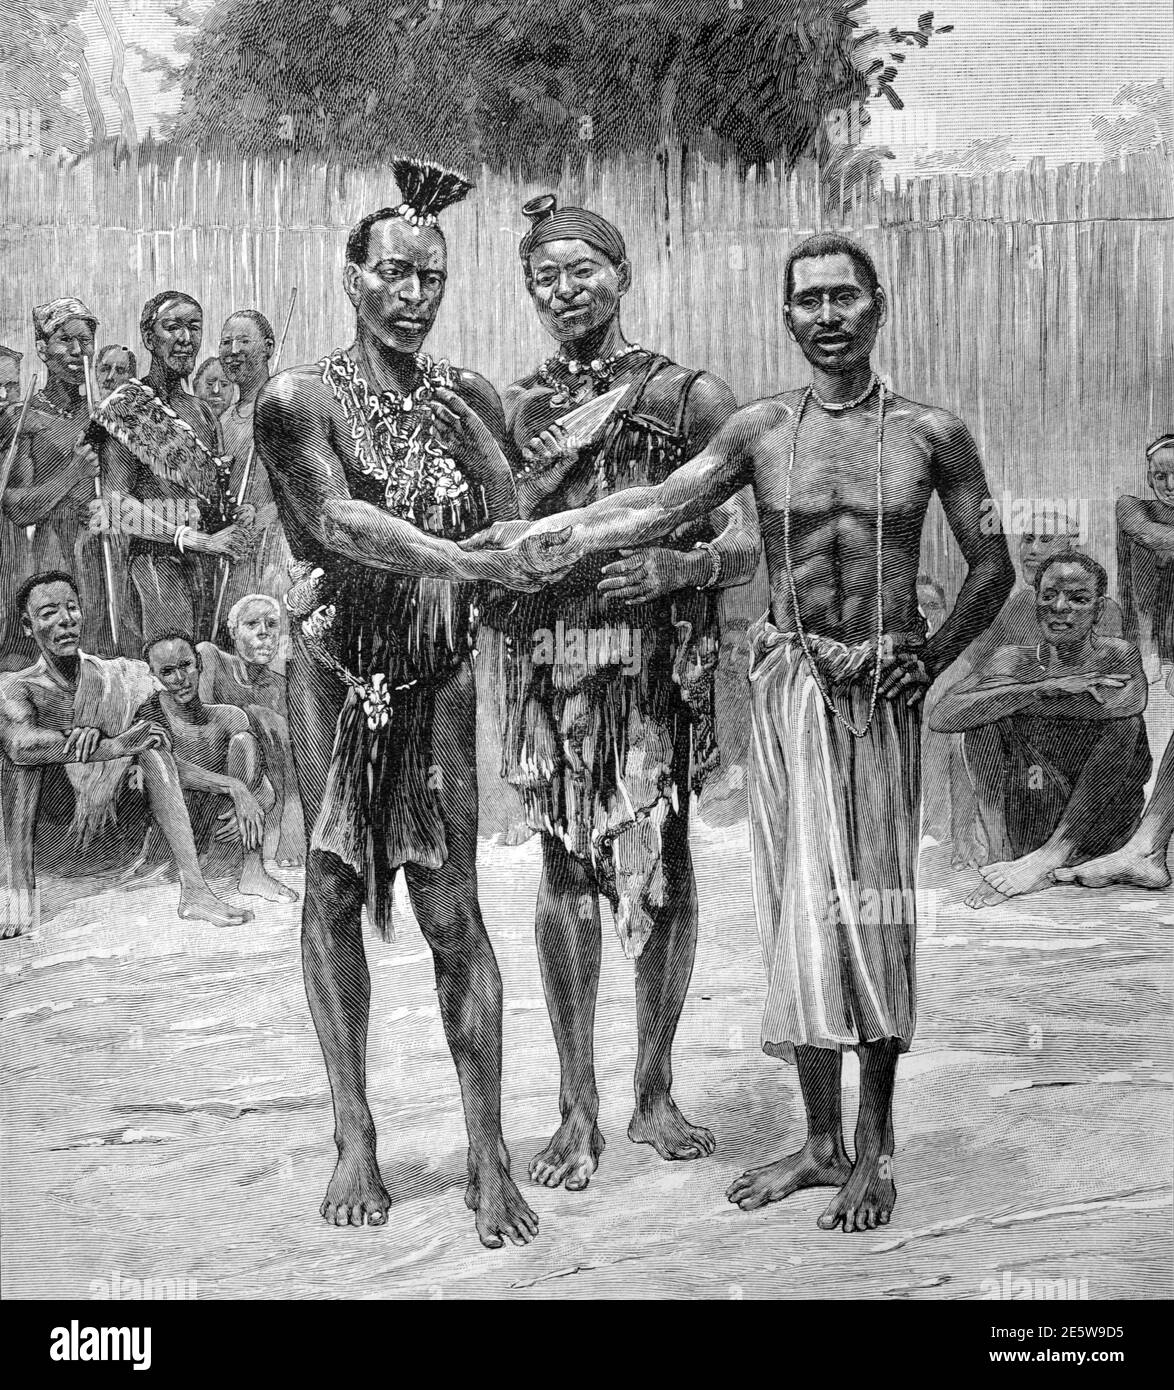 Cerimonia dei Fratelli del sangue che si è condivisa con sangue e che ha agitato le mani nel Costa d'Avorio Africa occidentale 1903 immagine d'epoca o incisione Foto Stock